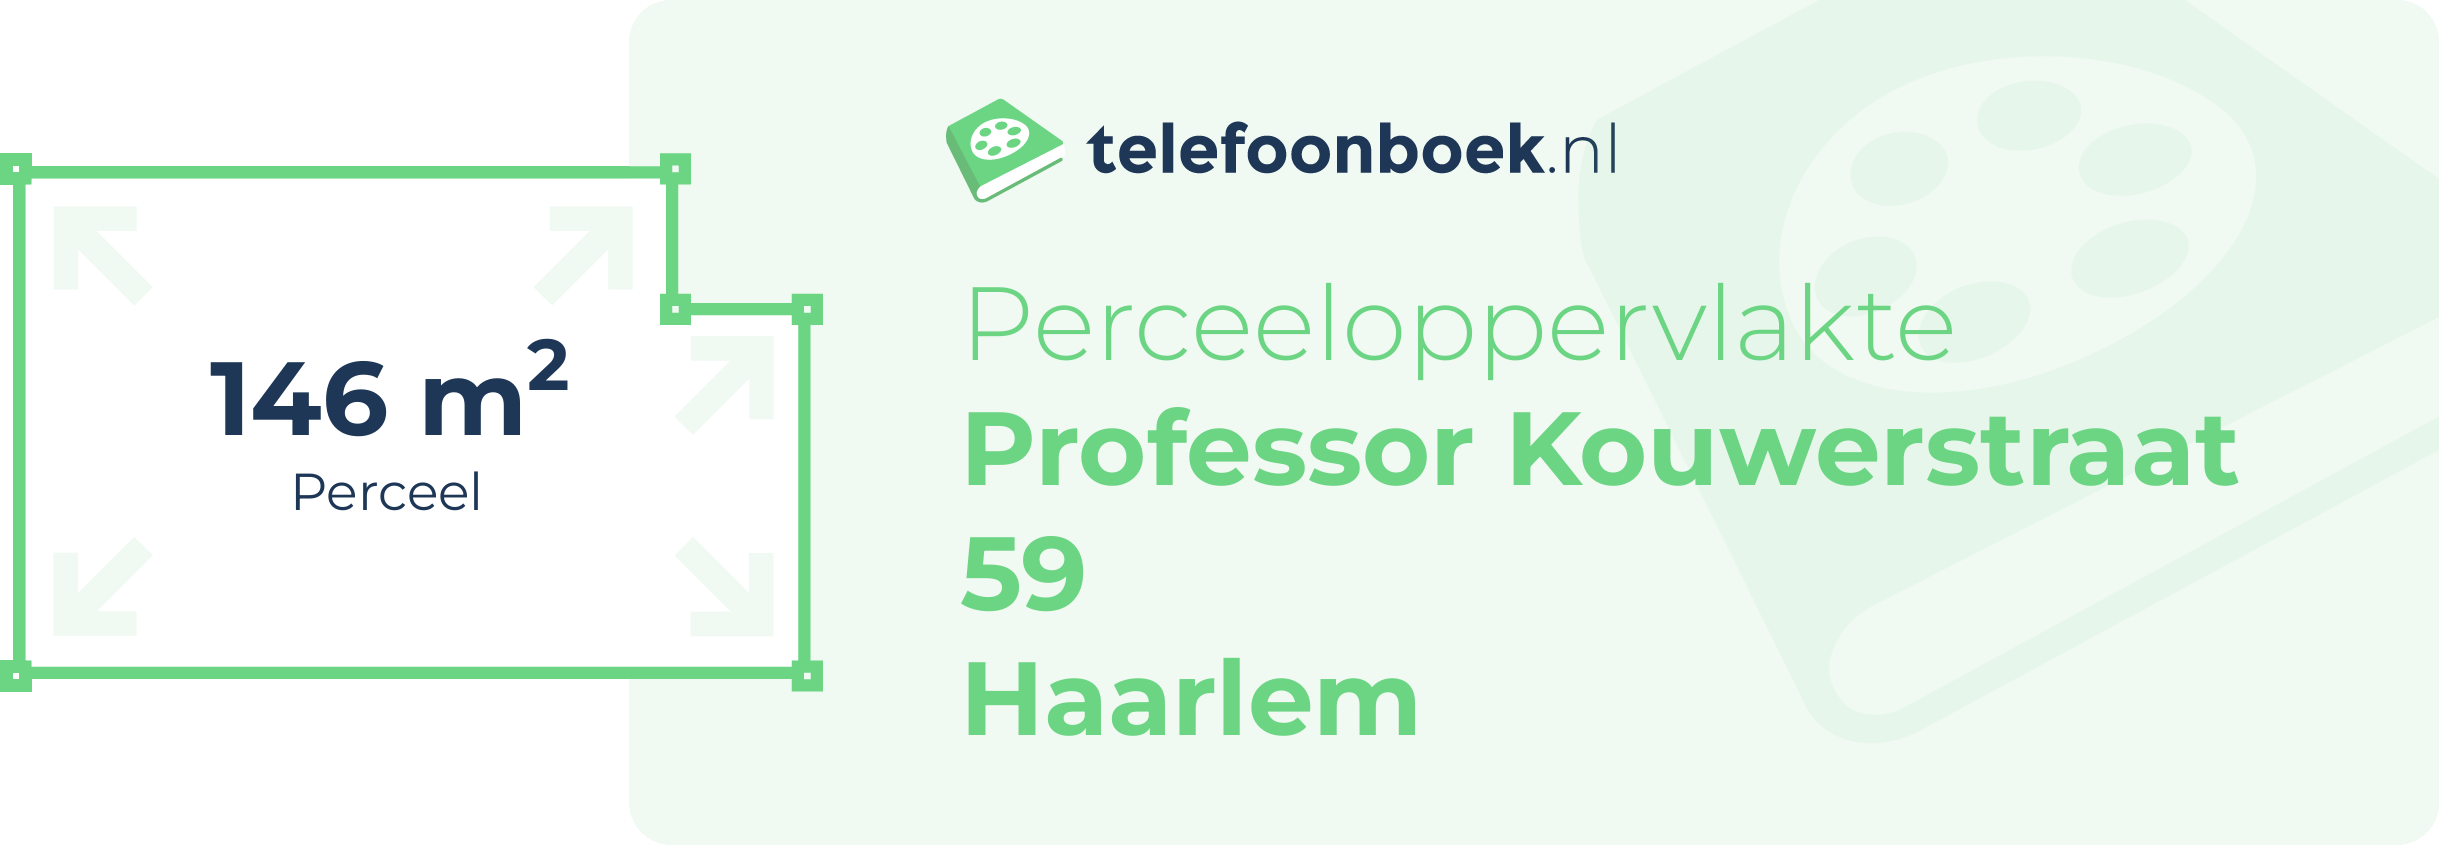 Perceeloppervlakte Professor Kouwerstraat 59 Haarlem